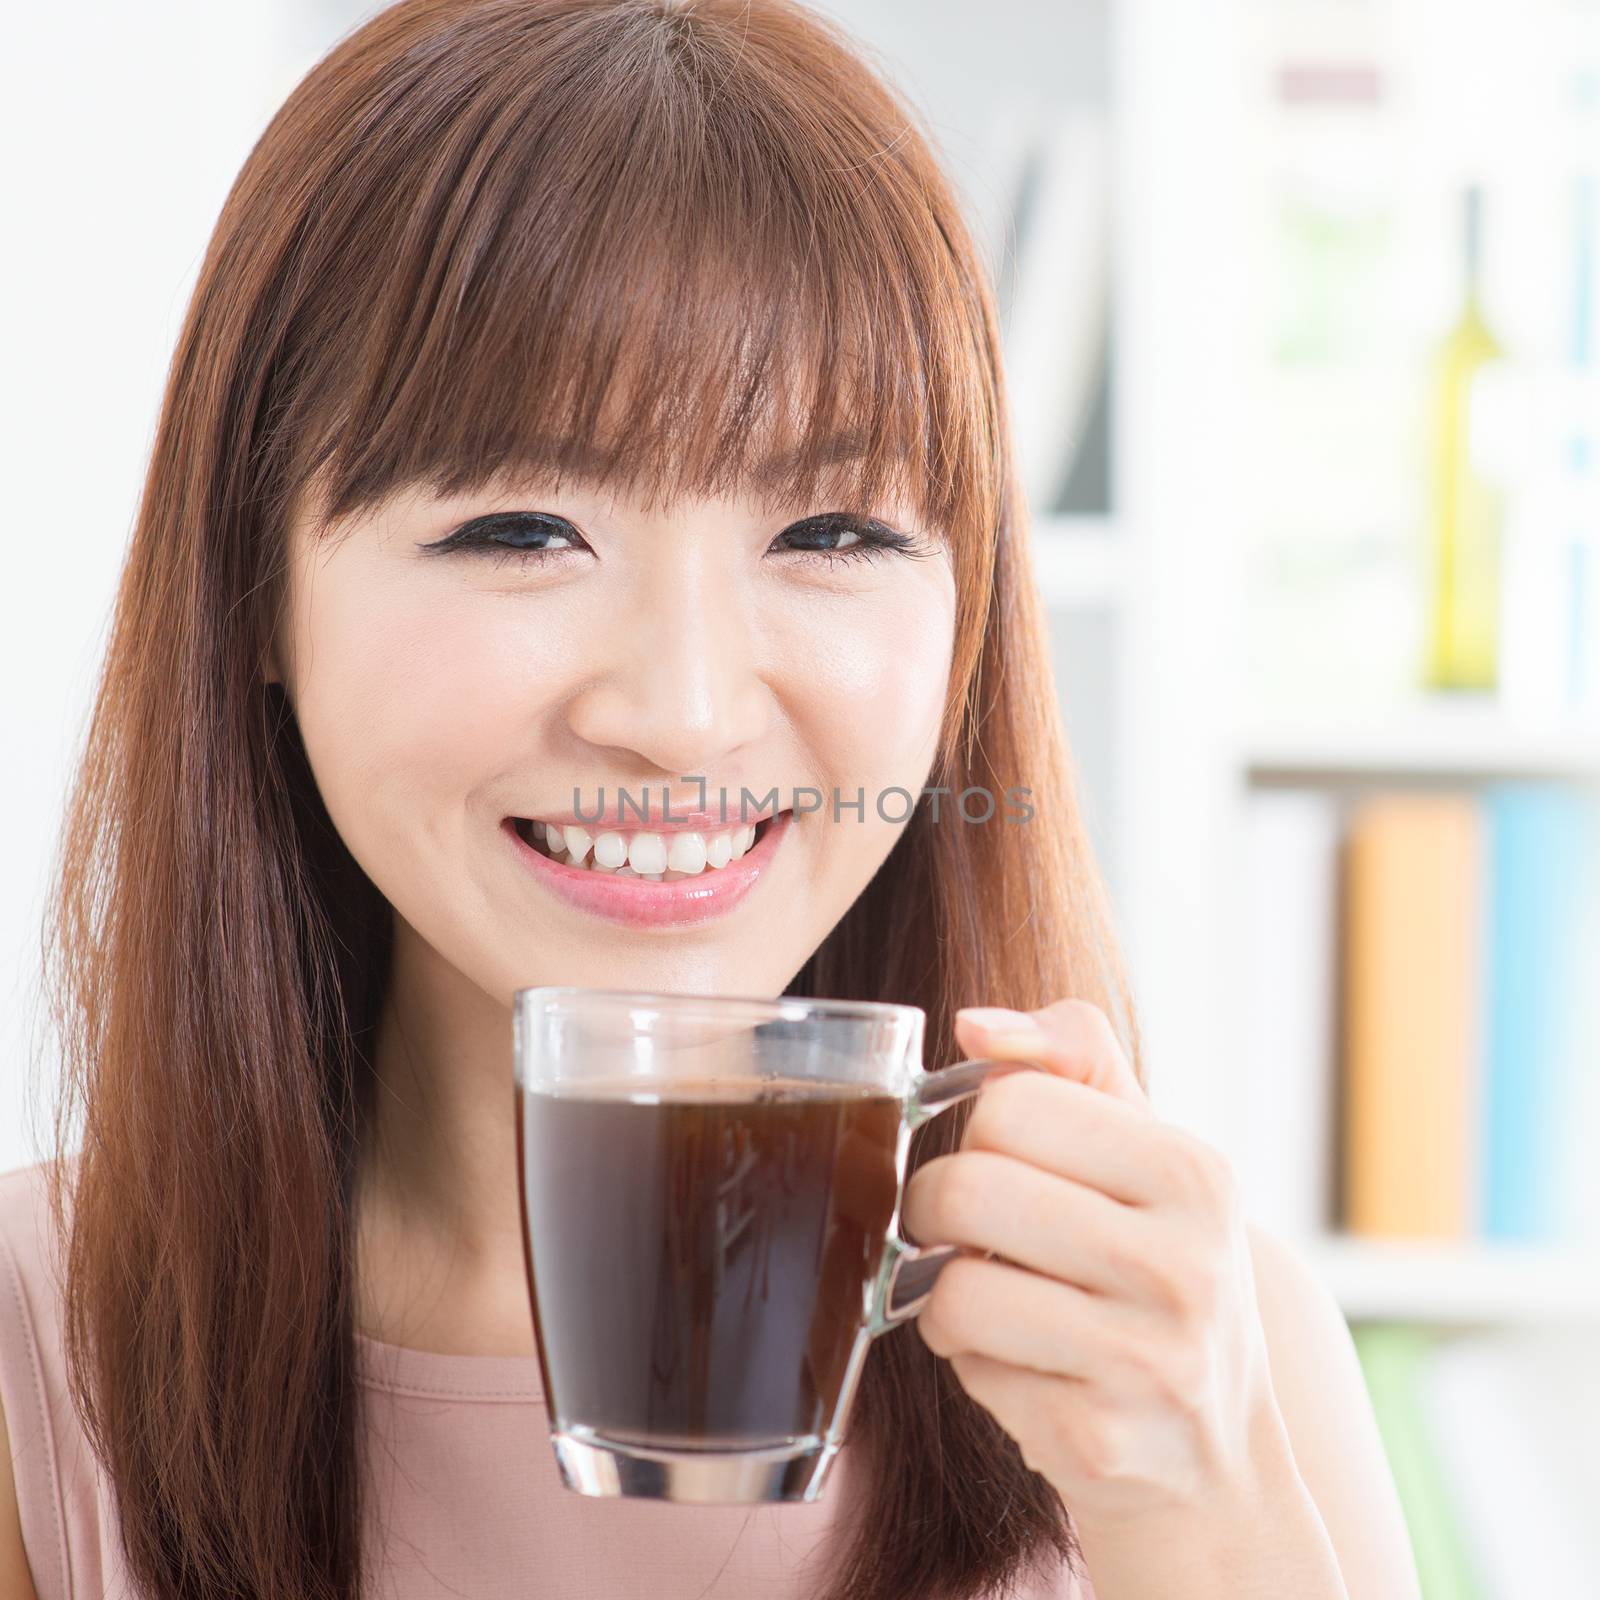 Asian girl enjoying coffee by szefei